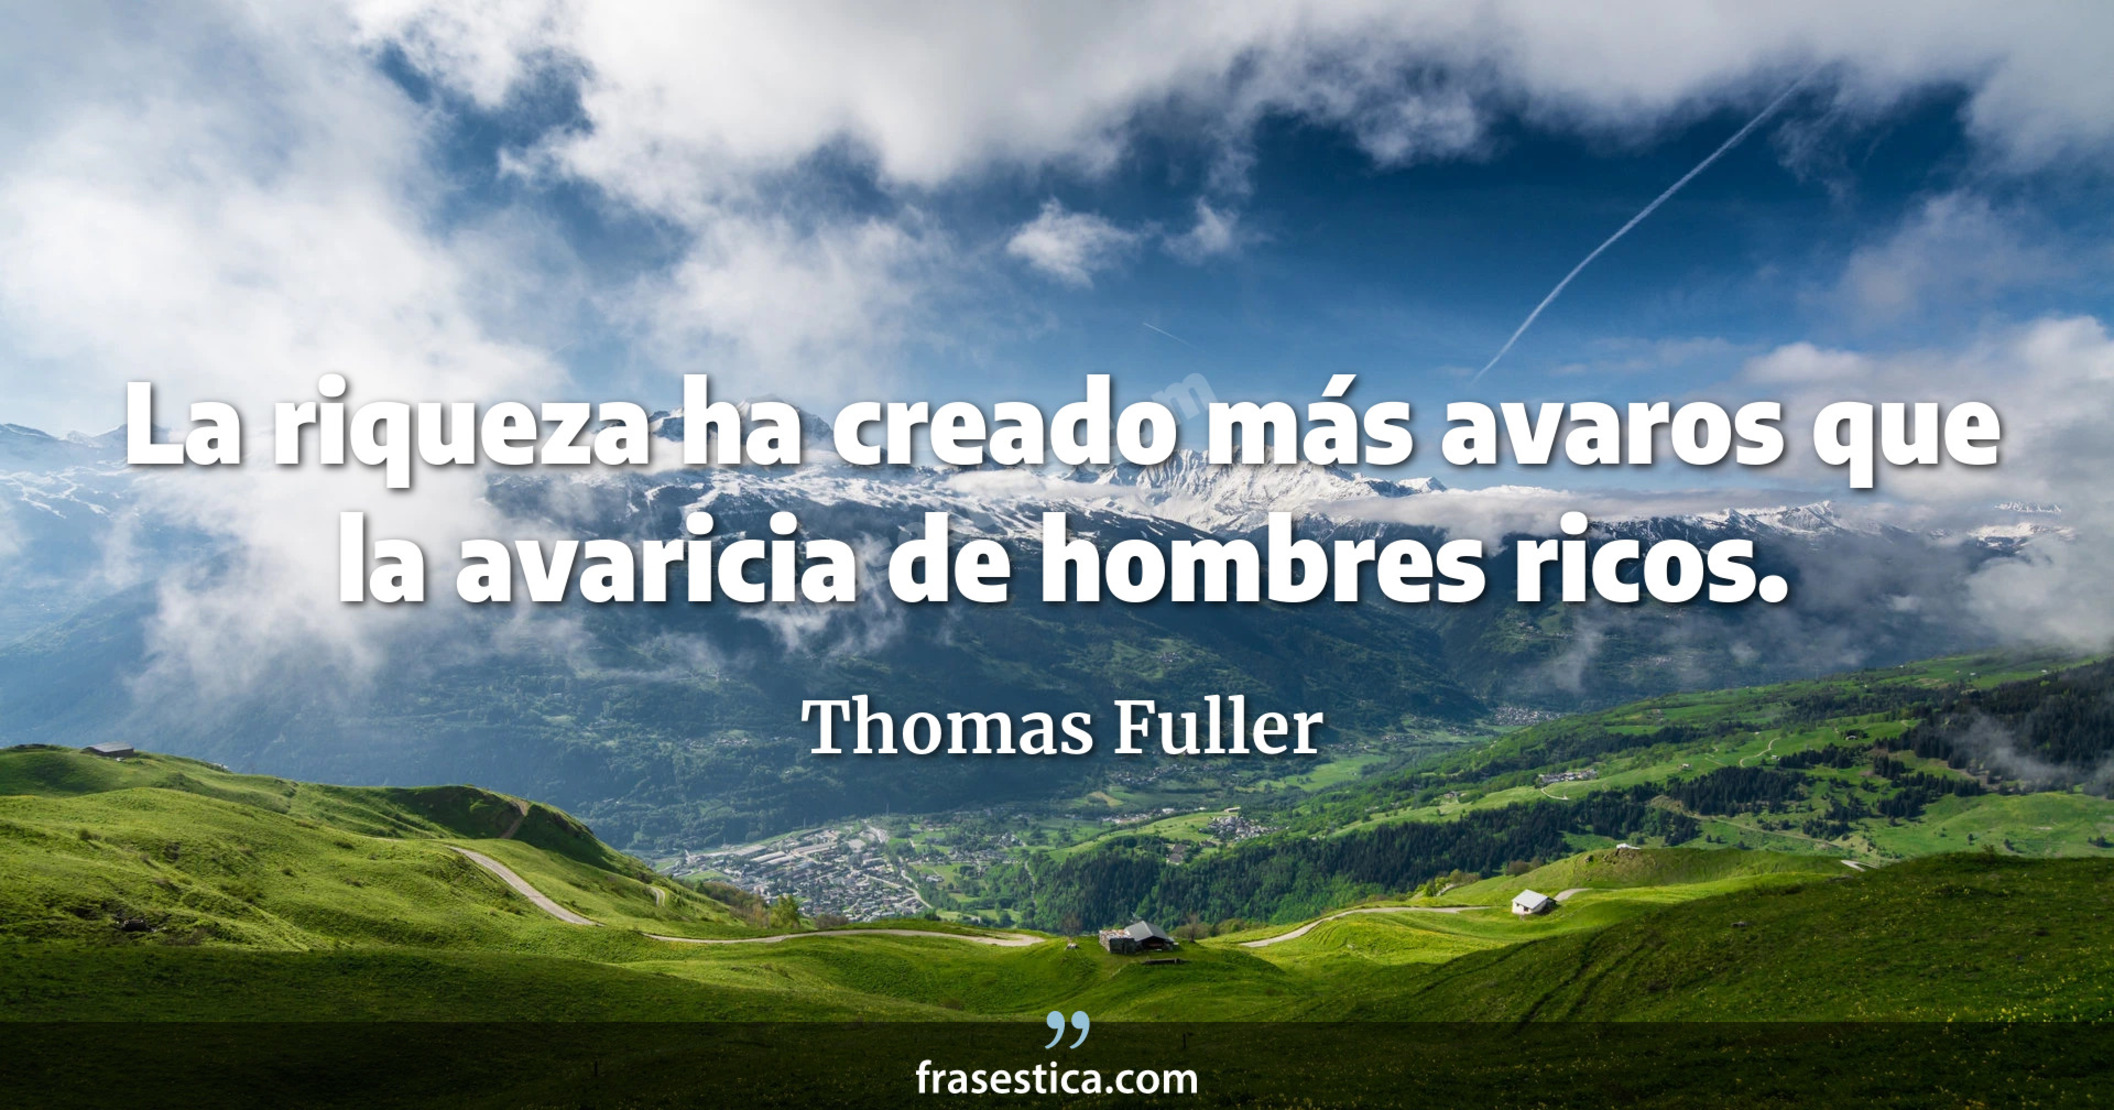 La riqueza ha creado más avaros que la avaricia de hombres ricos. - Thomas Fuller